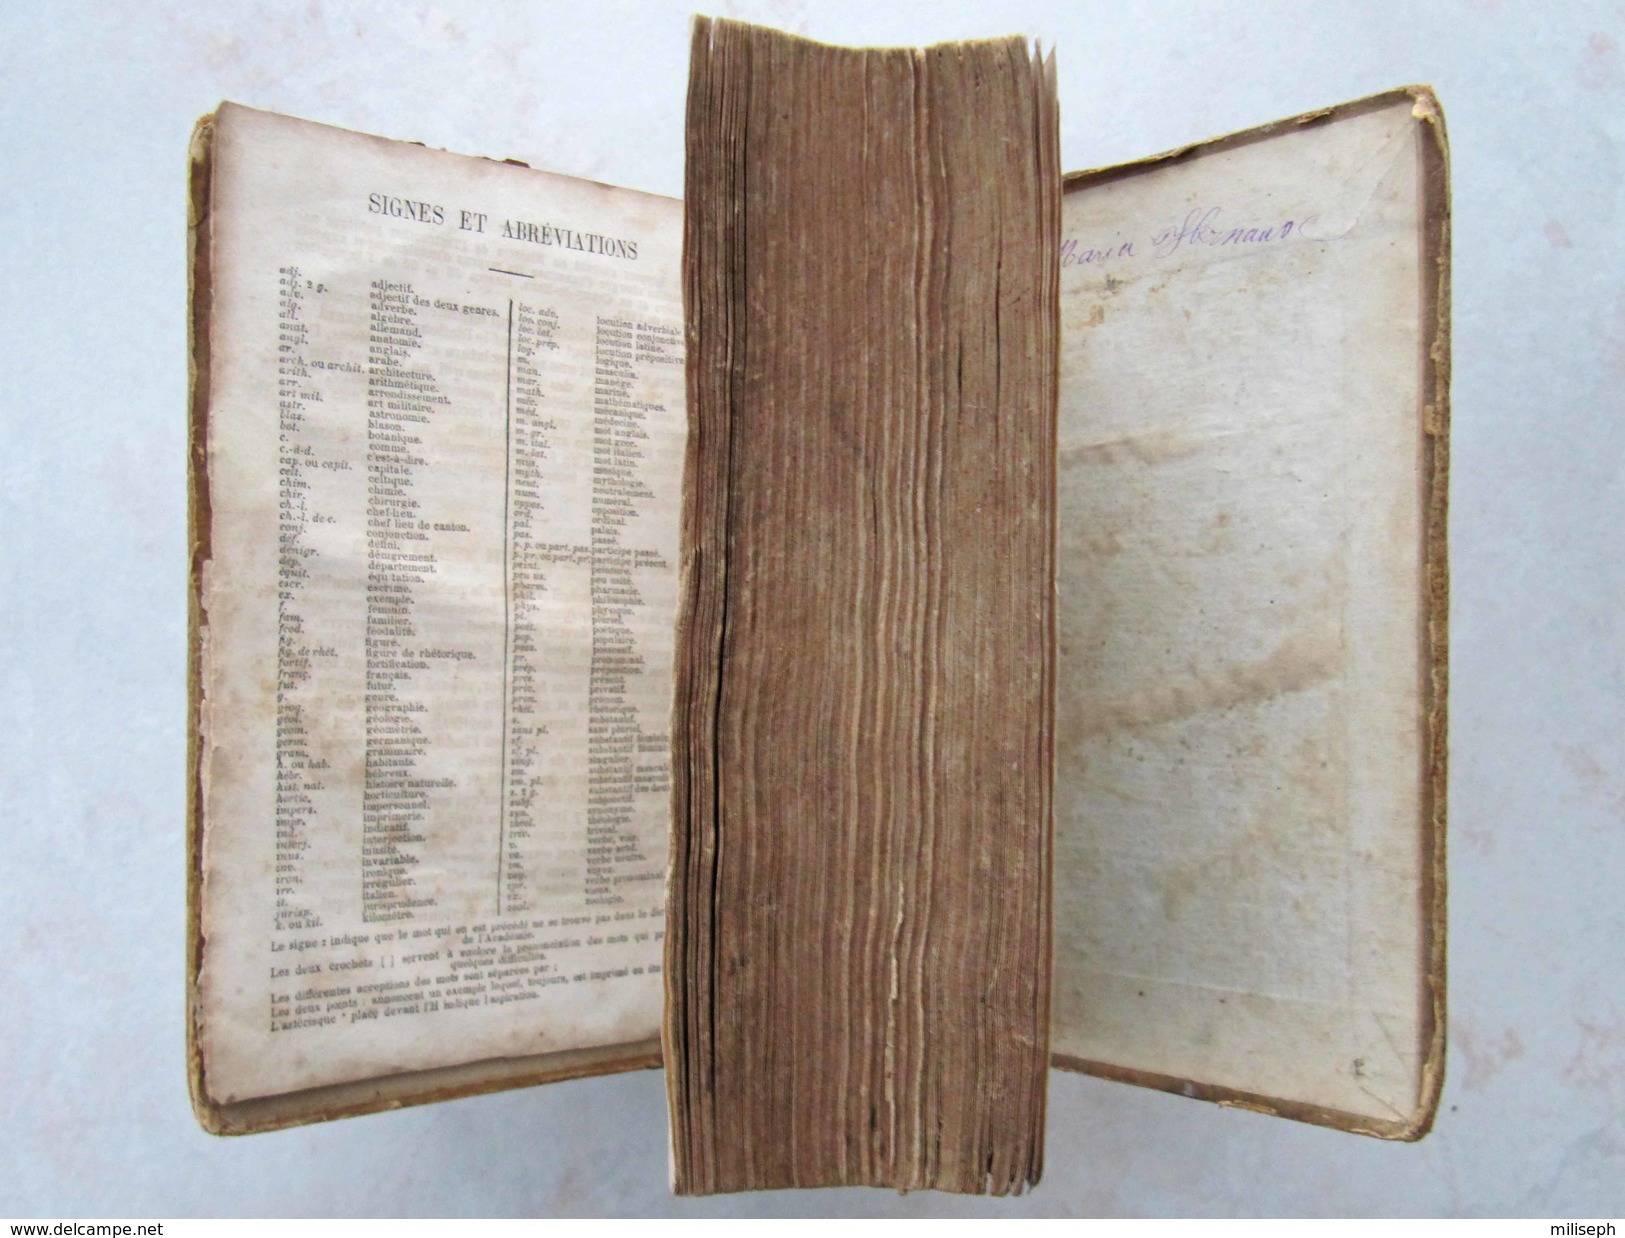 Livre rare et ancien - DICTIONNAIRE Classique Universel par BENARD Th.- Librairie Eugène Belin - 1872 - (4304)